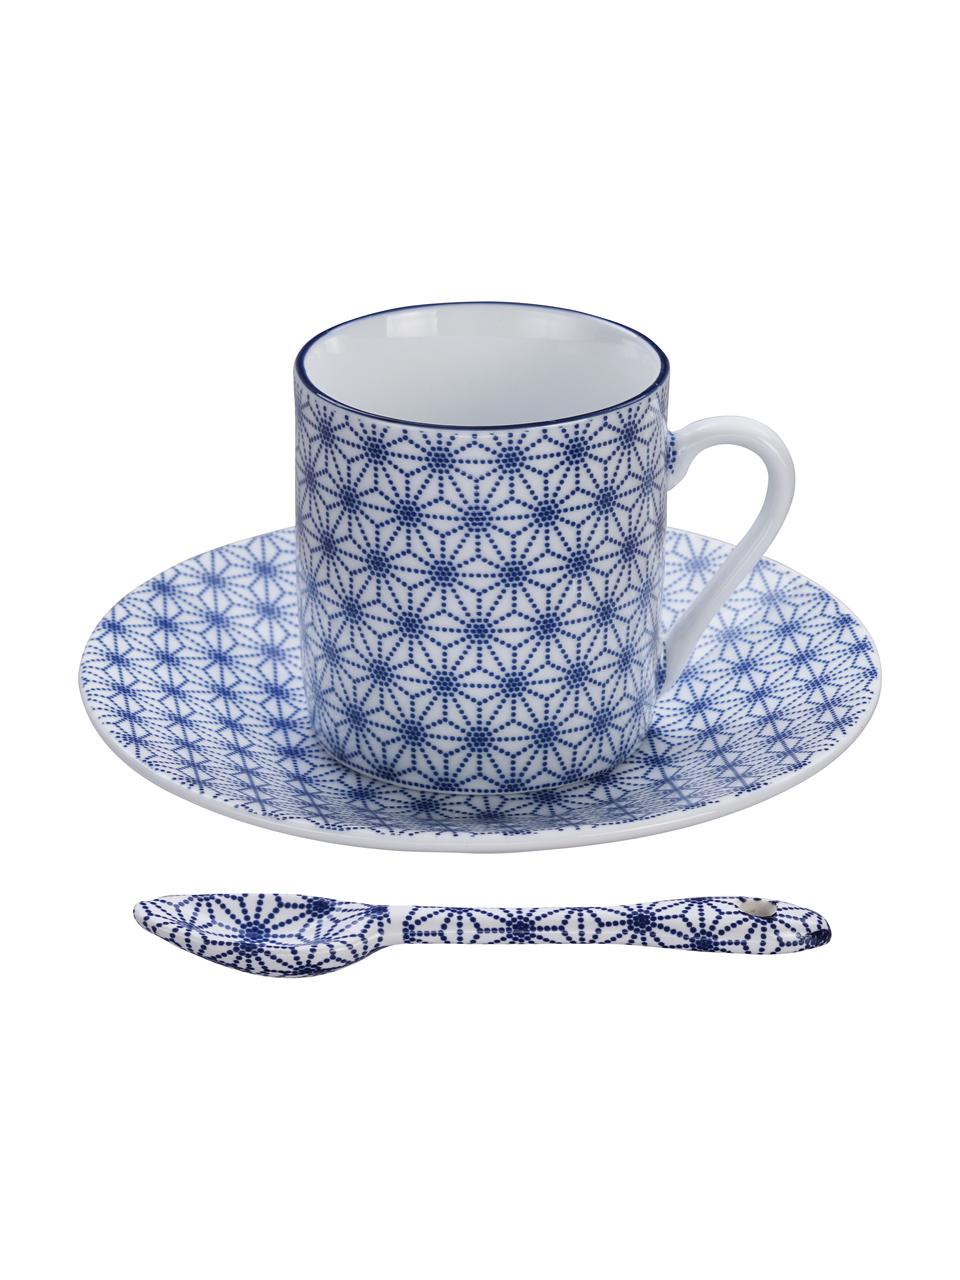 Handgemaakt porseleinen serviesset Nippon in blauw/wit, 4 personen (12 stuks), Porselein, Blauw, wit, Set met verschillende groottes